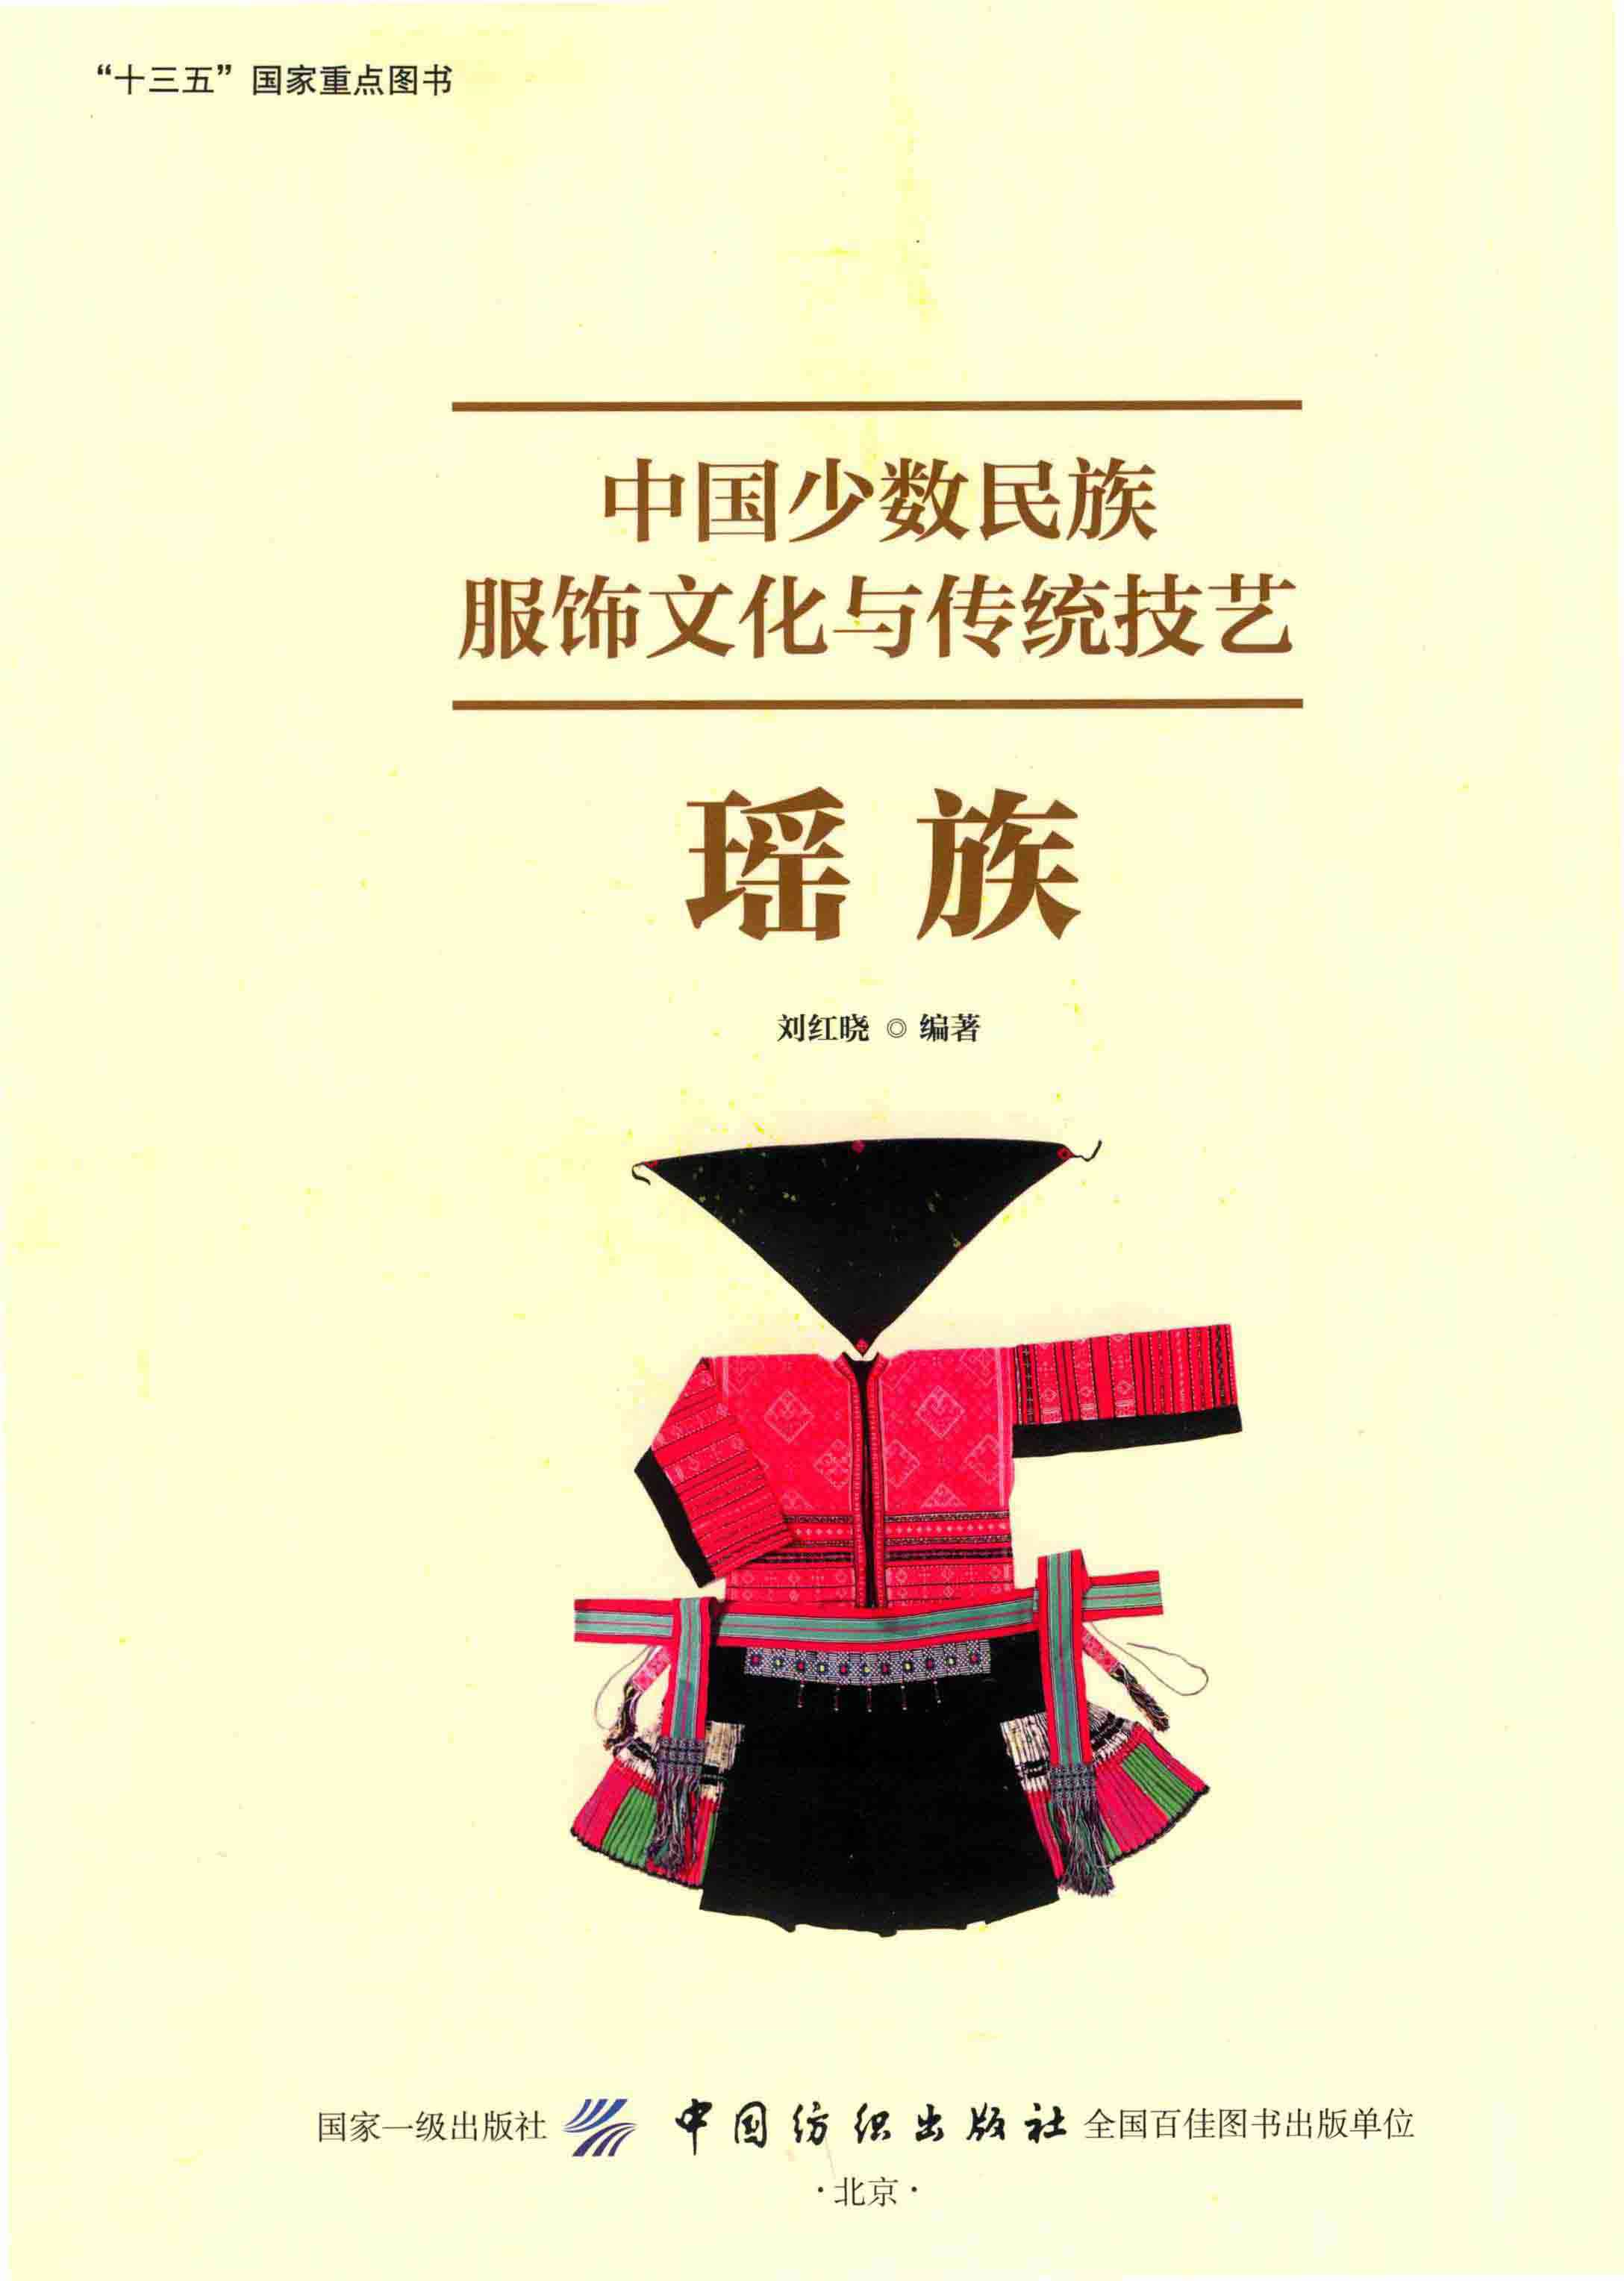 中国少数民族服饰文化与传统技艺·瑶族